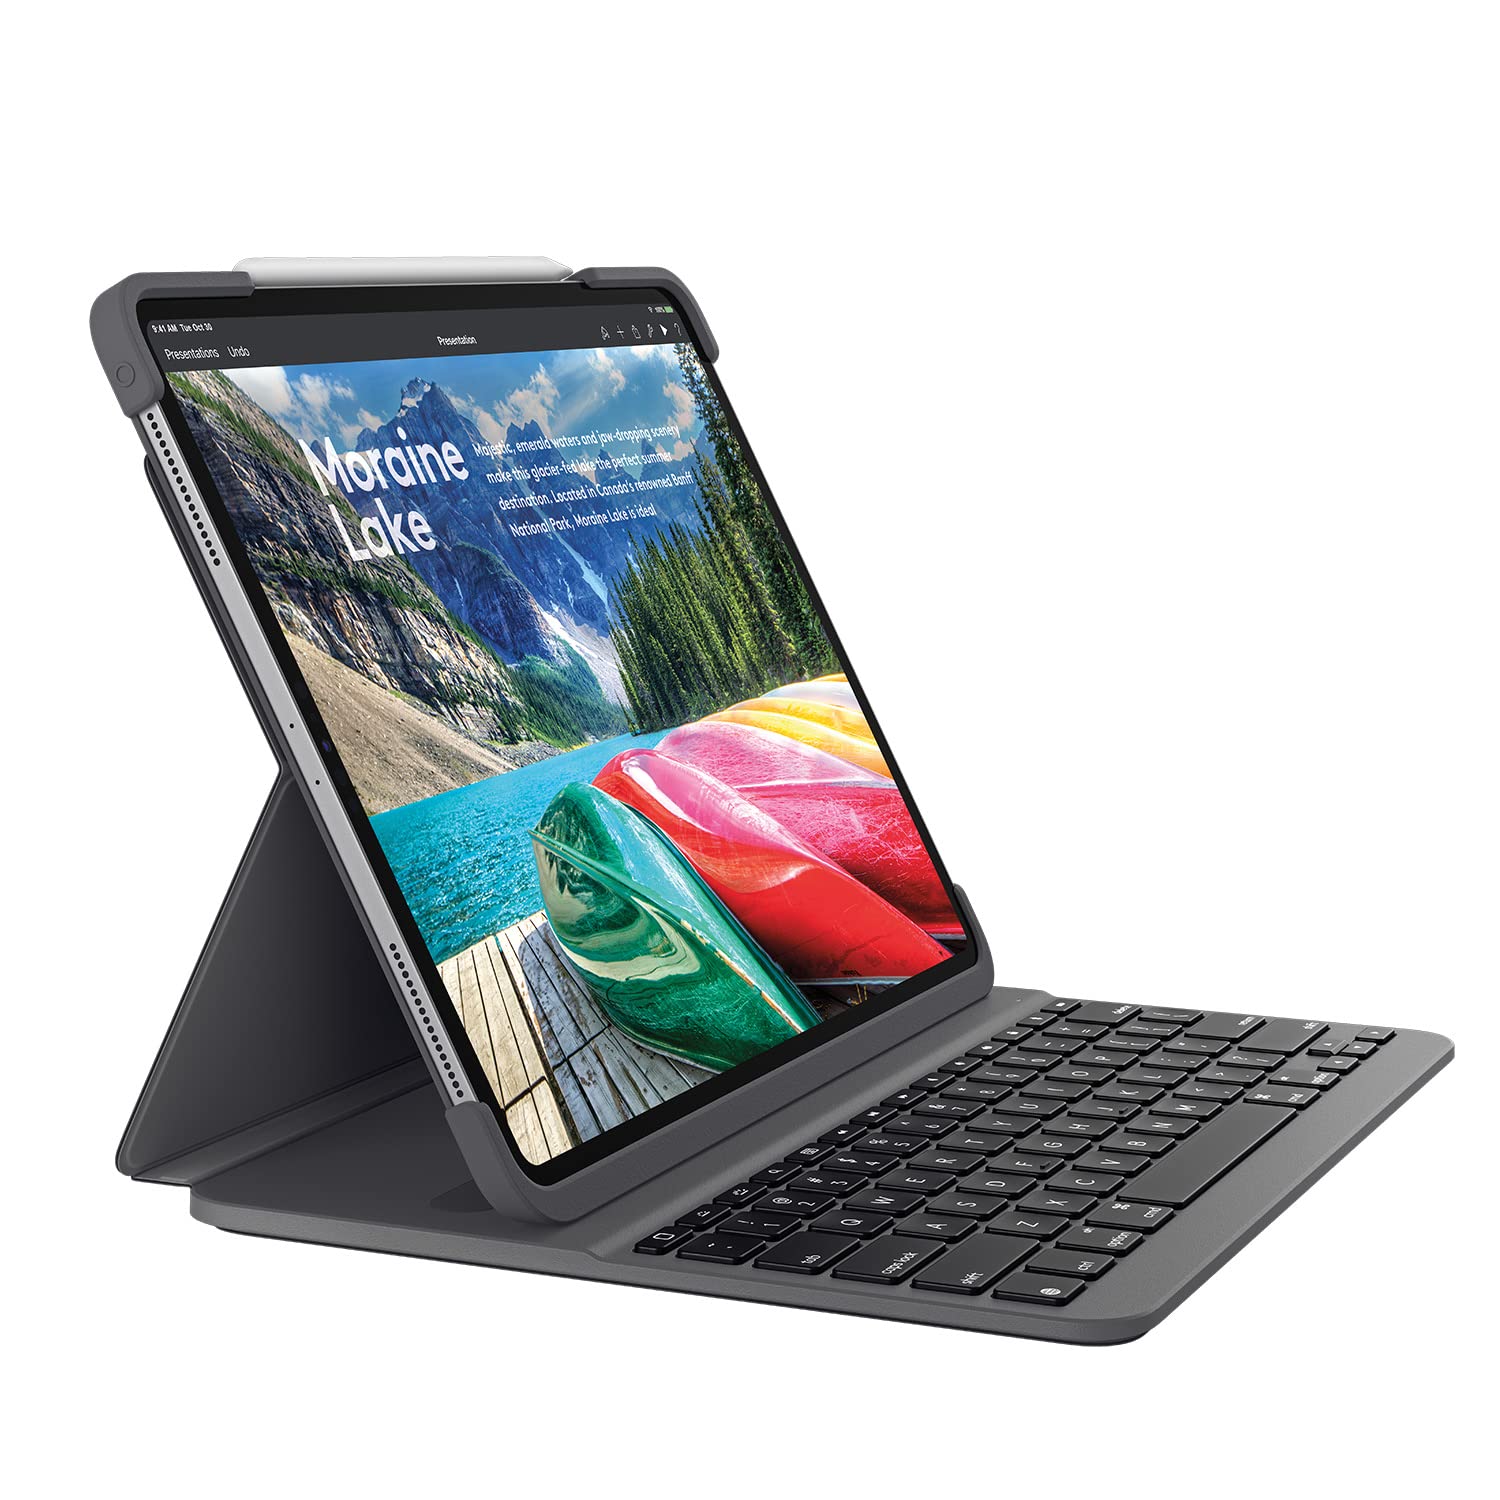 iPad Pro 12.9” 2017, 512 GB with Logi Smart Keyboard